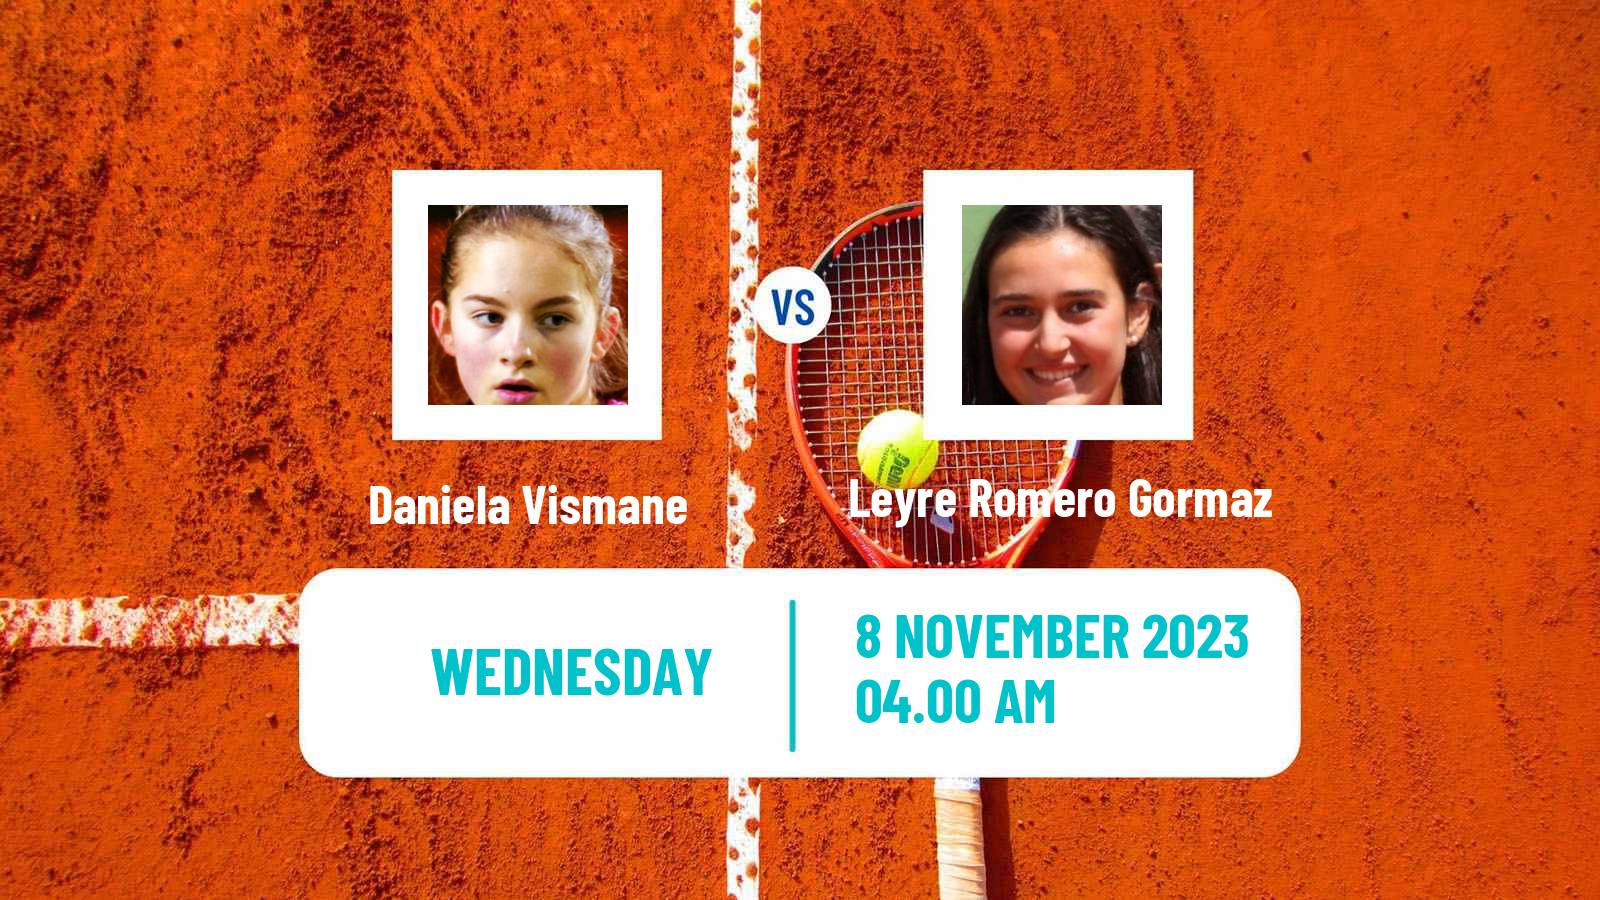 Tennis ITF W40 Heraklion 2 Women Daniela Vismane - Leyre Romero Gormaz